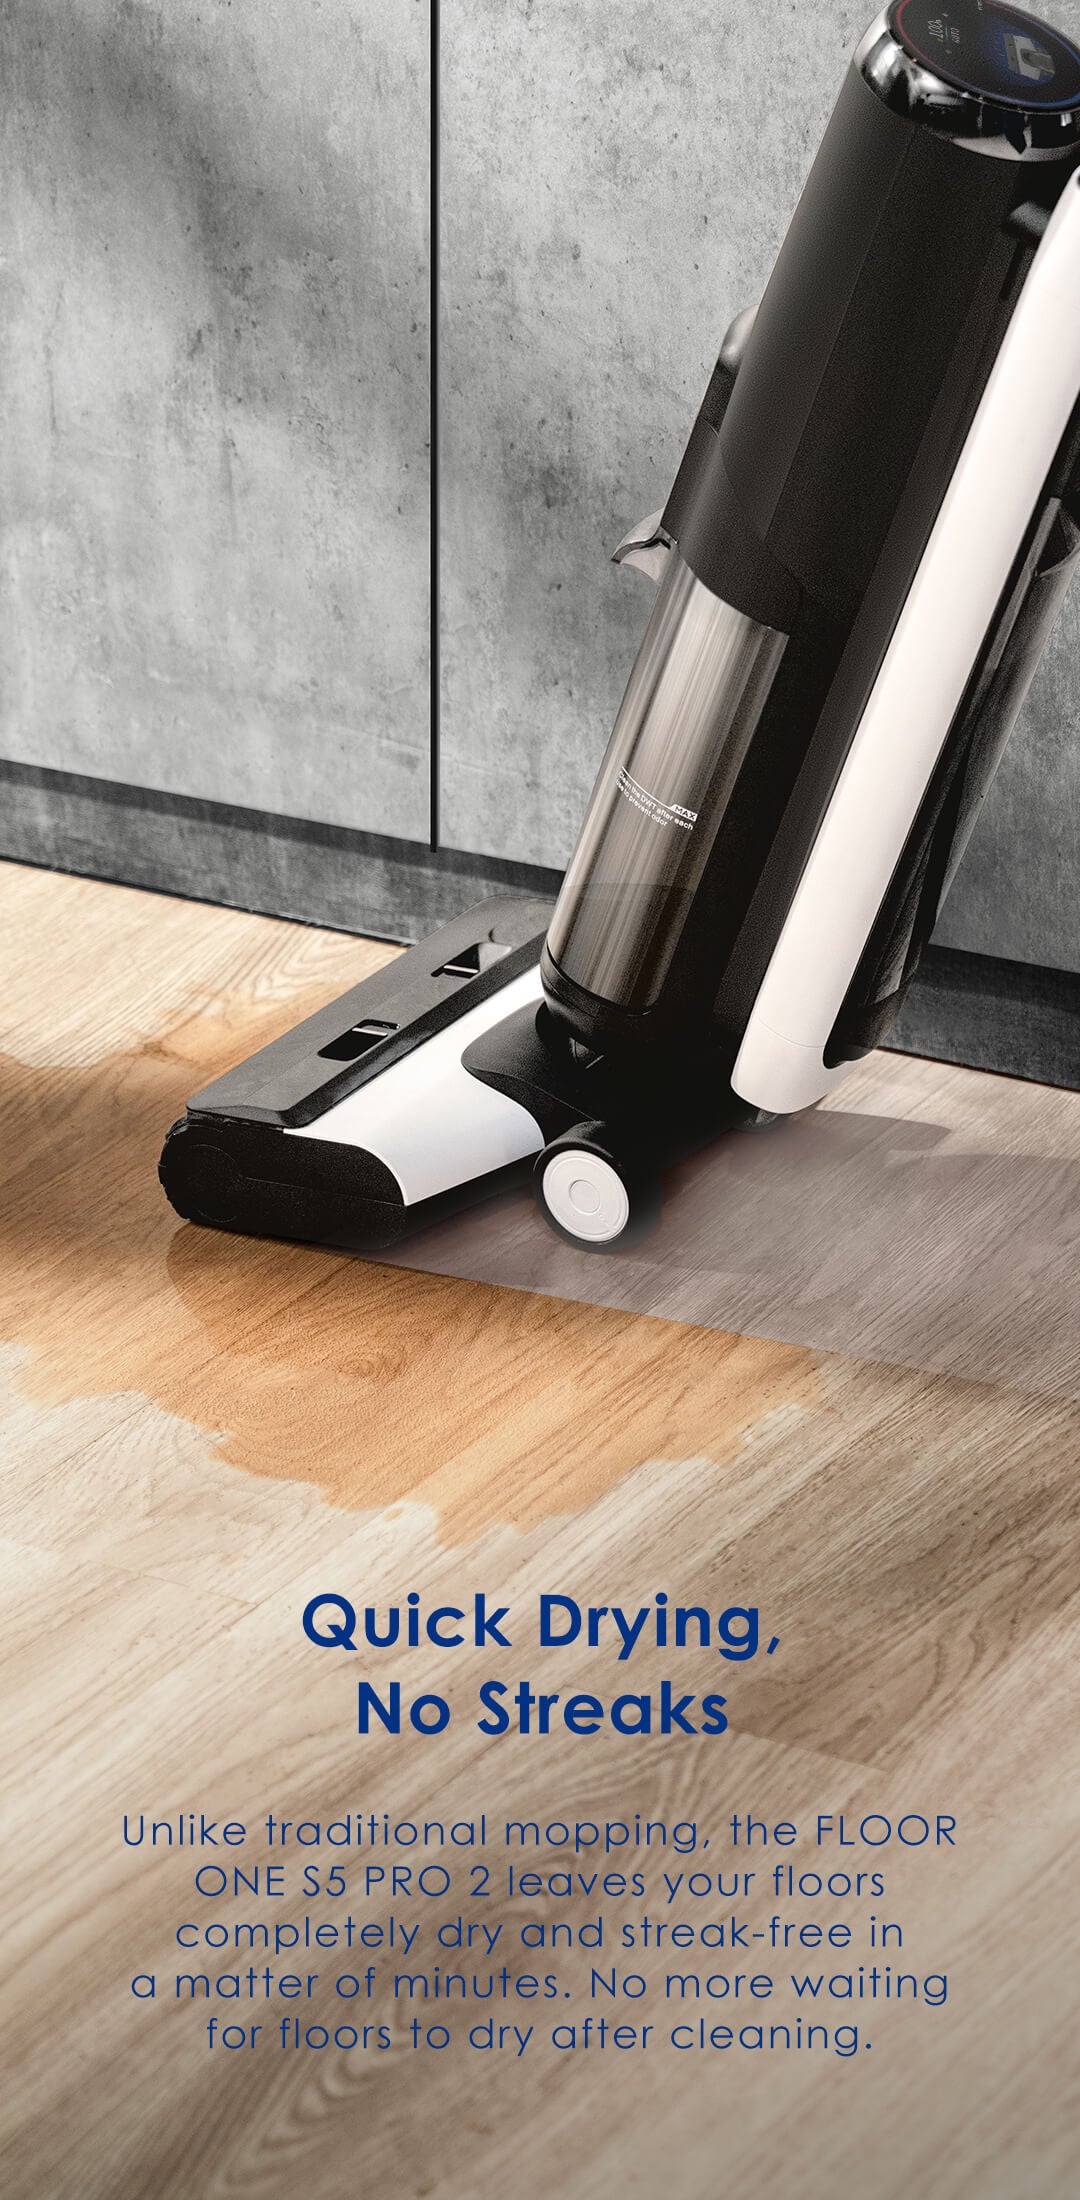 Tineco FLOOR ONE S5 PRO 2: Smart Cordless Wet Dry Vacuum Cleaner